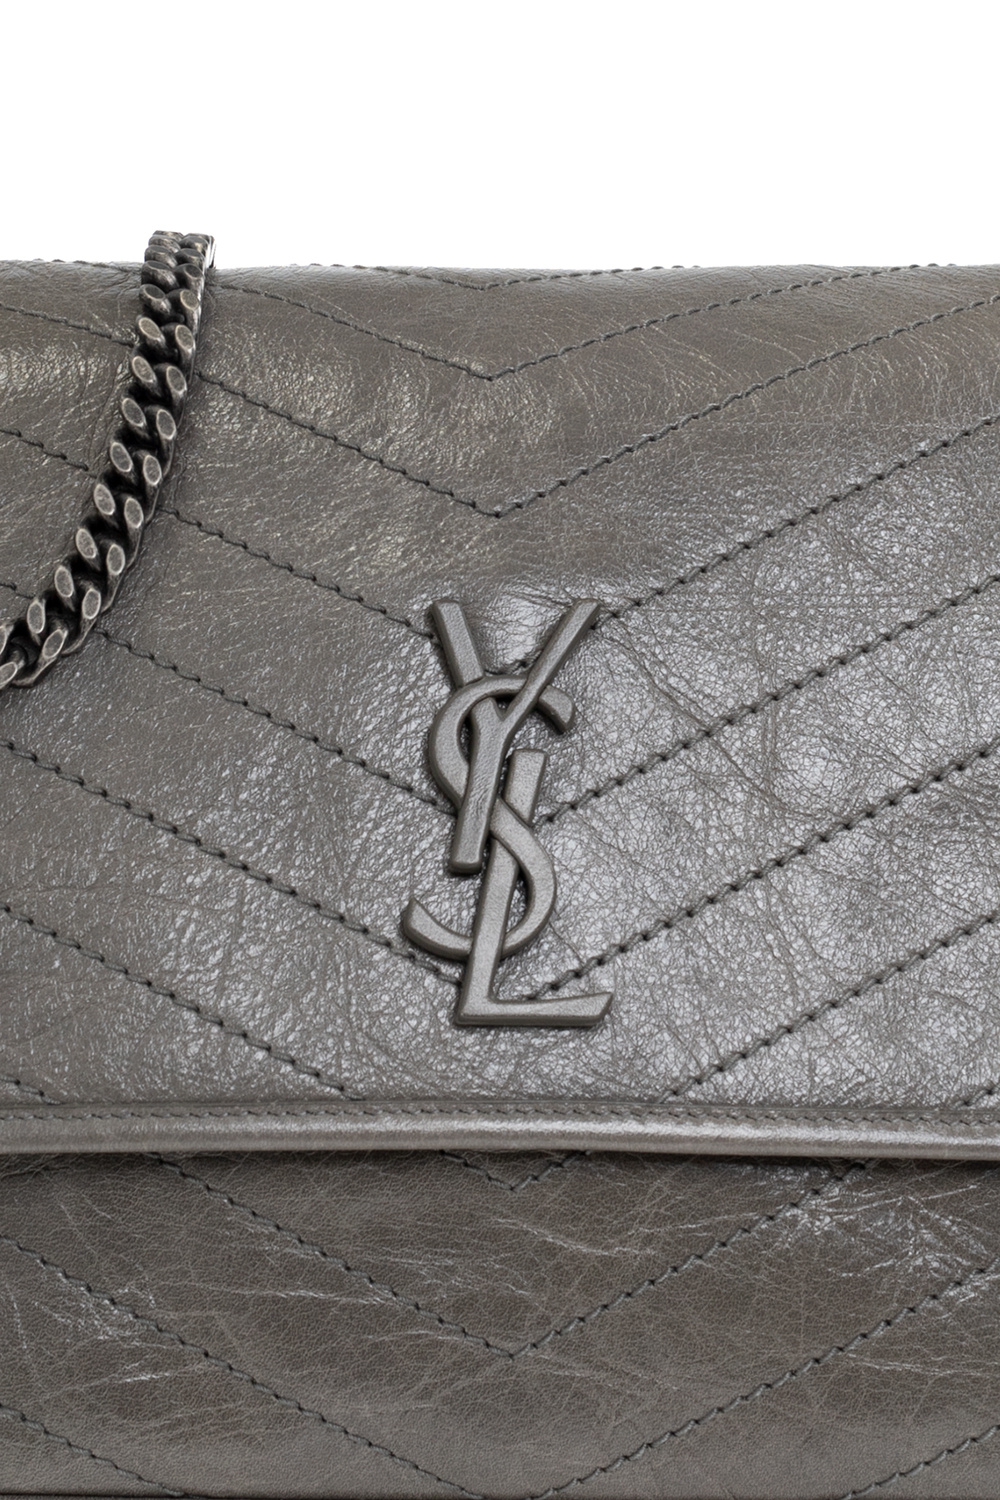 Ysl Niki Baby Chain Bag (Grey), Women's Fashion, Bags & Wallets